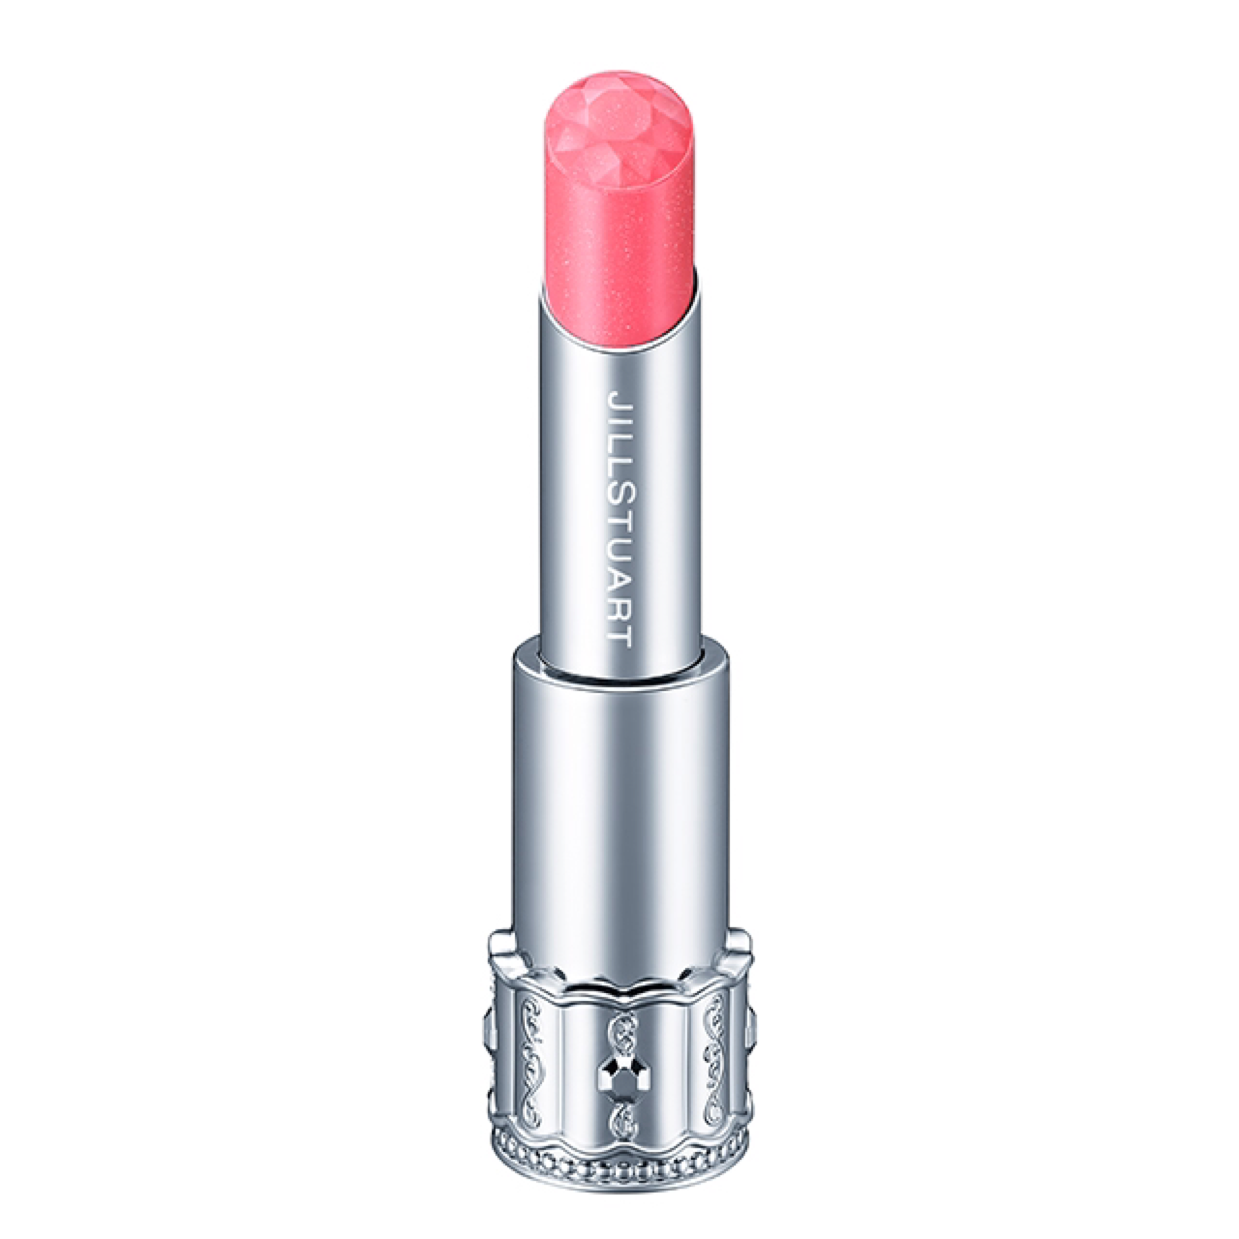 Jill Stuart lipstick